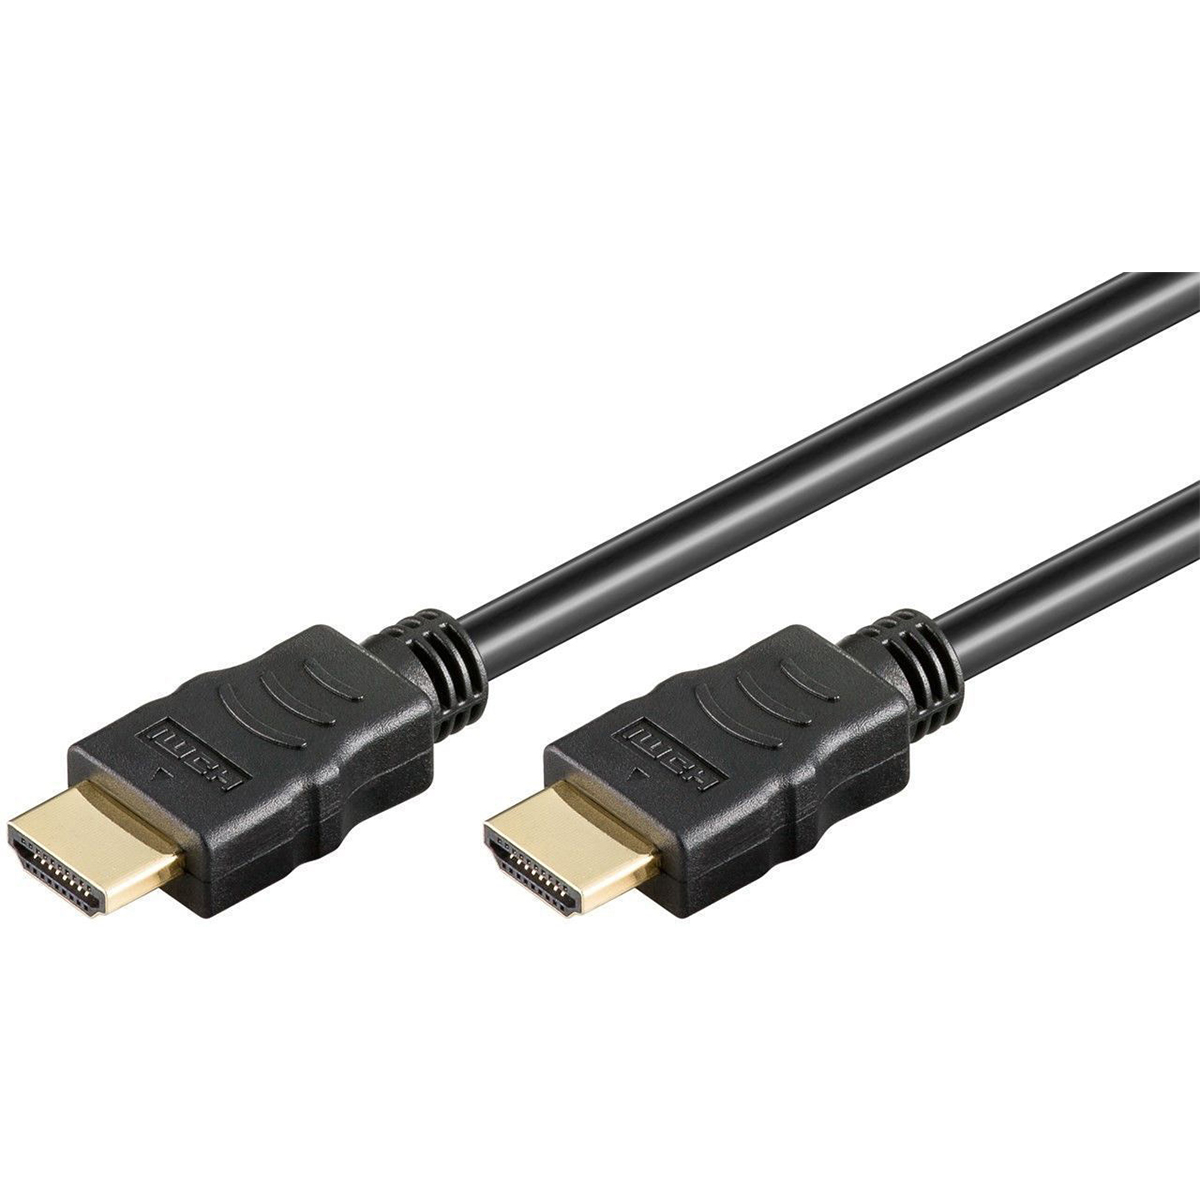 B.I.G. HDMI Kabel Stecker Typ A auf Stecker Typ A 2 m